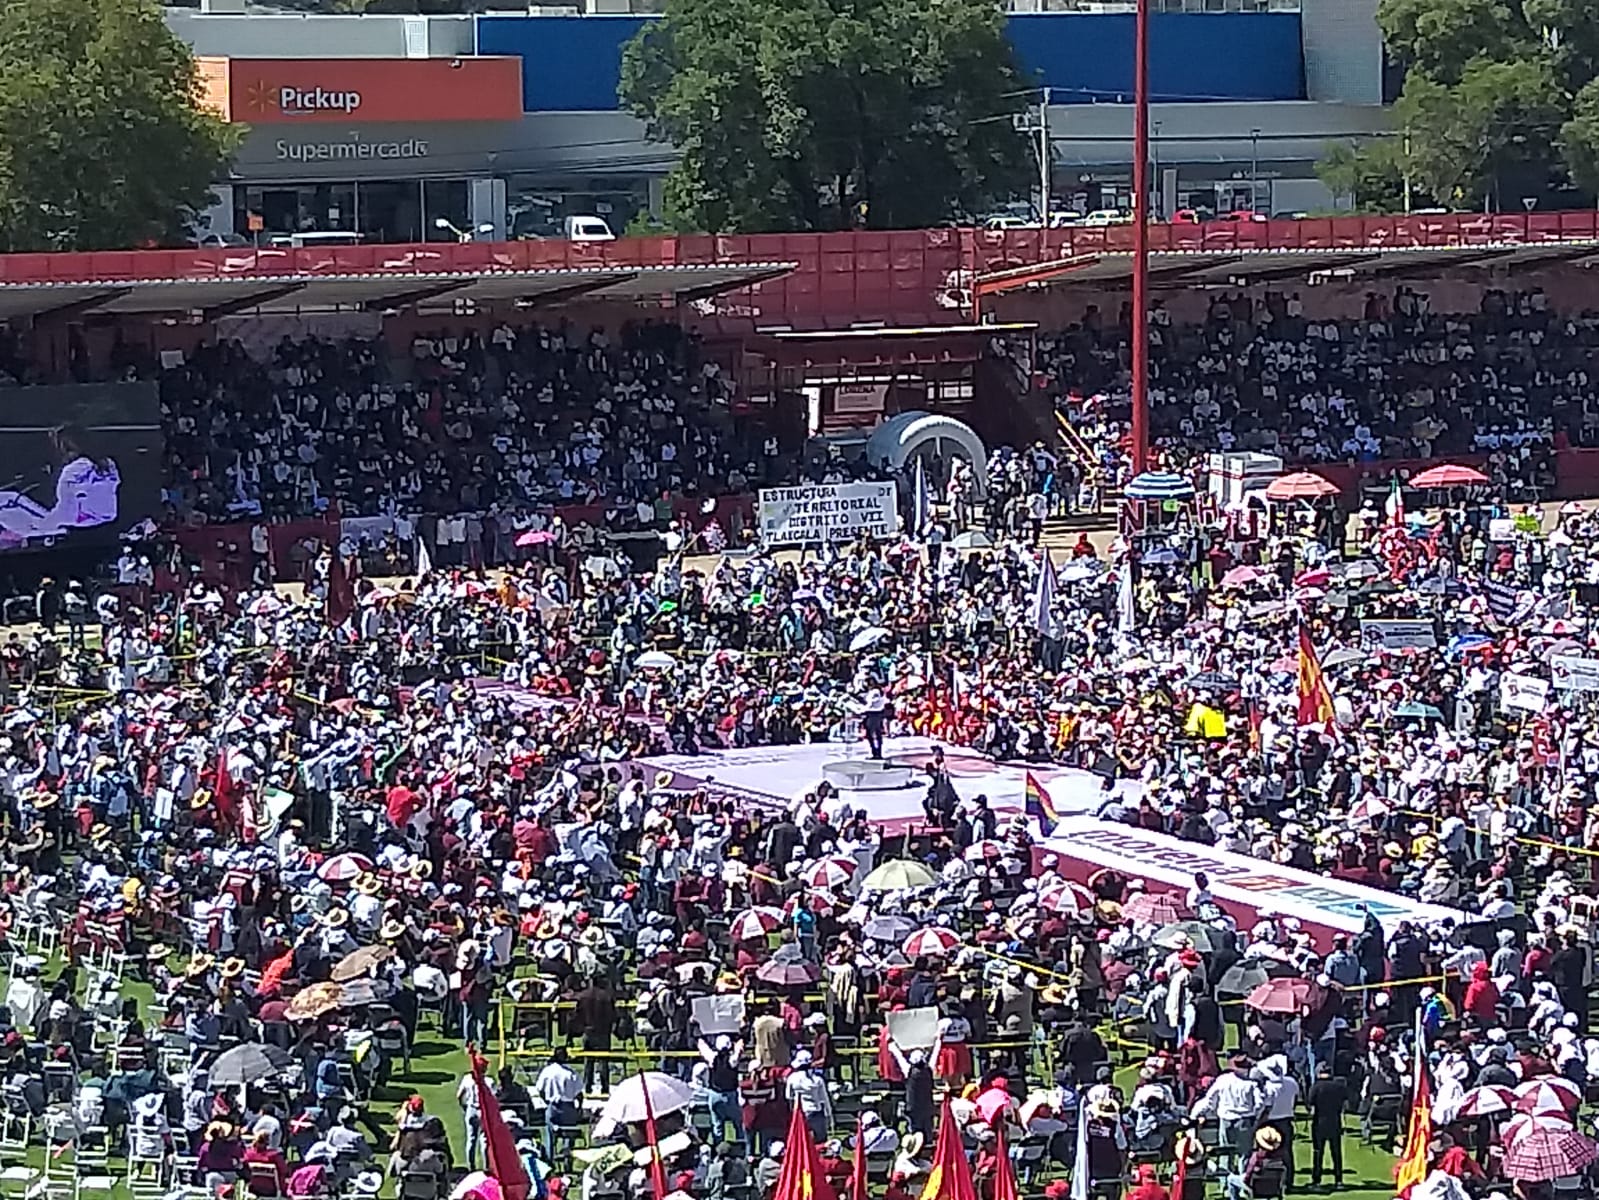 Cierra campaña LCC en acto multitudinario en el Estadio Tlahuicole